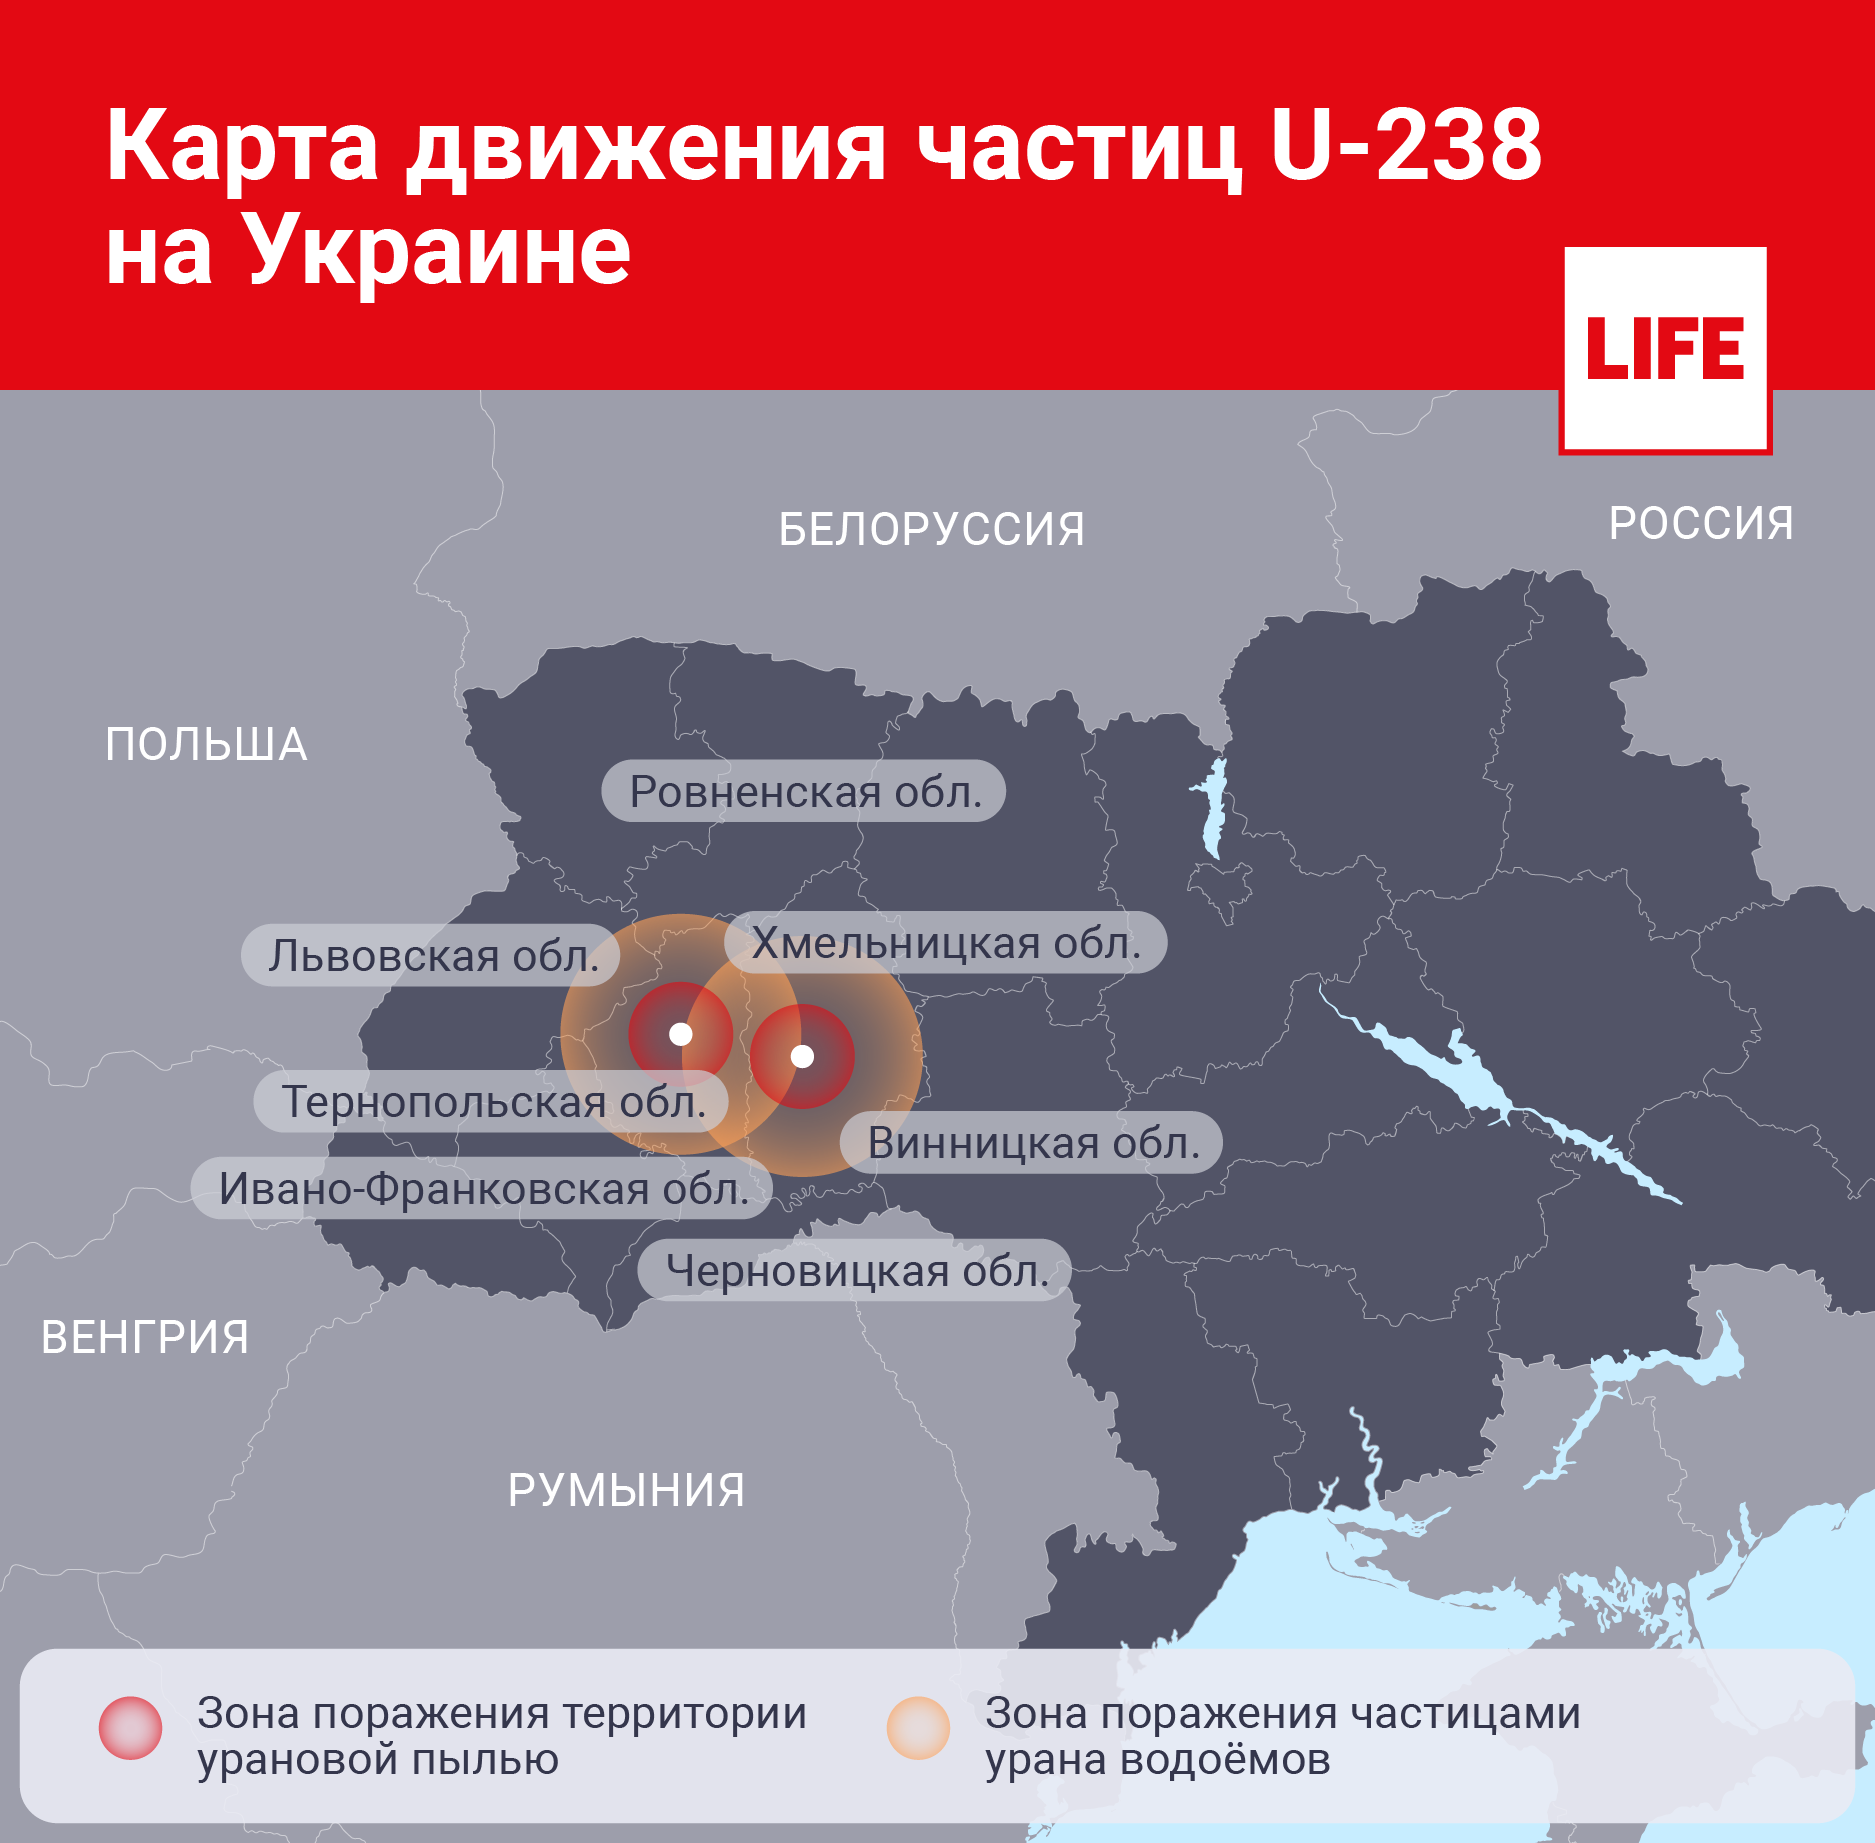 Карта движения частиц U-238 на Украине. Инфографика © LIFE